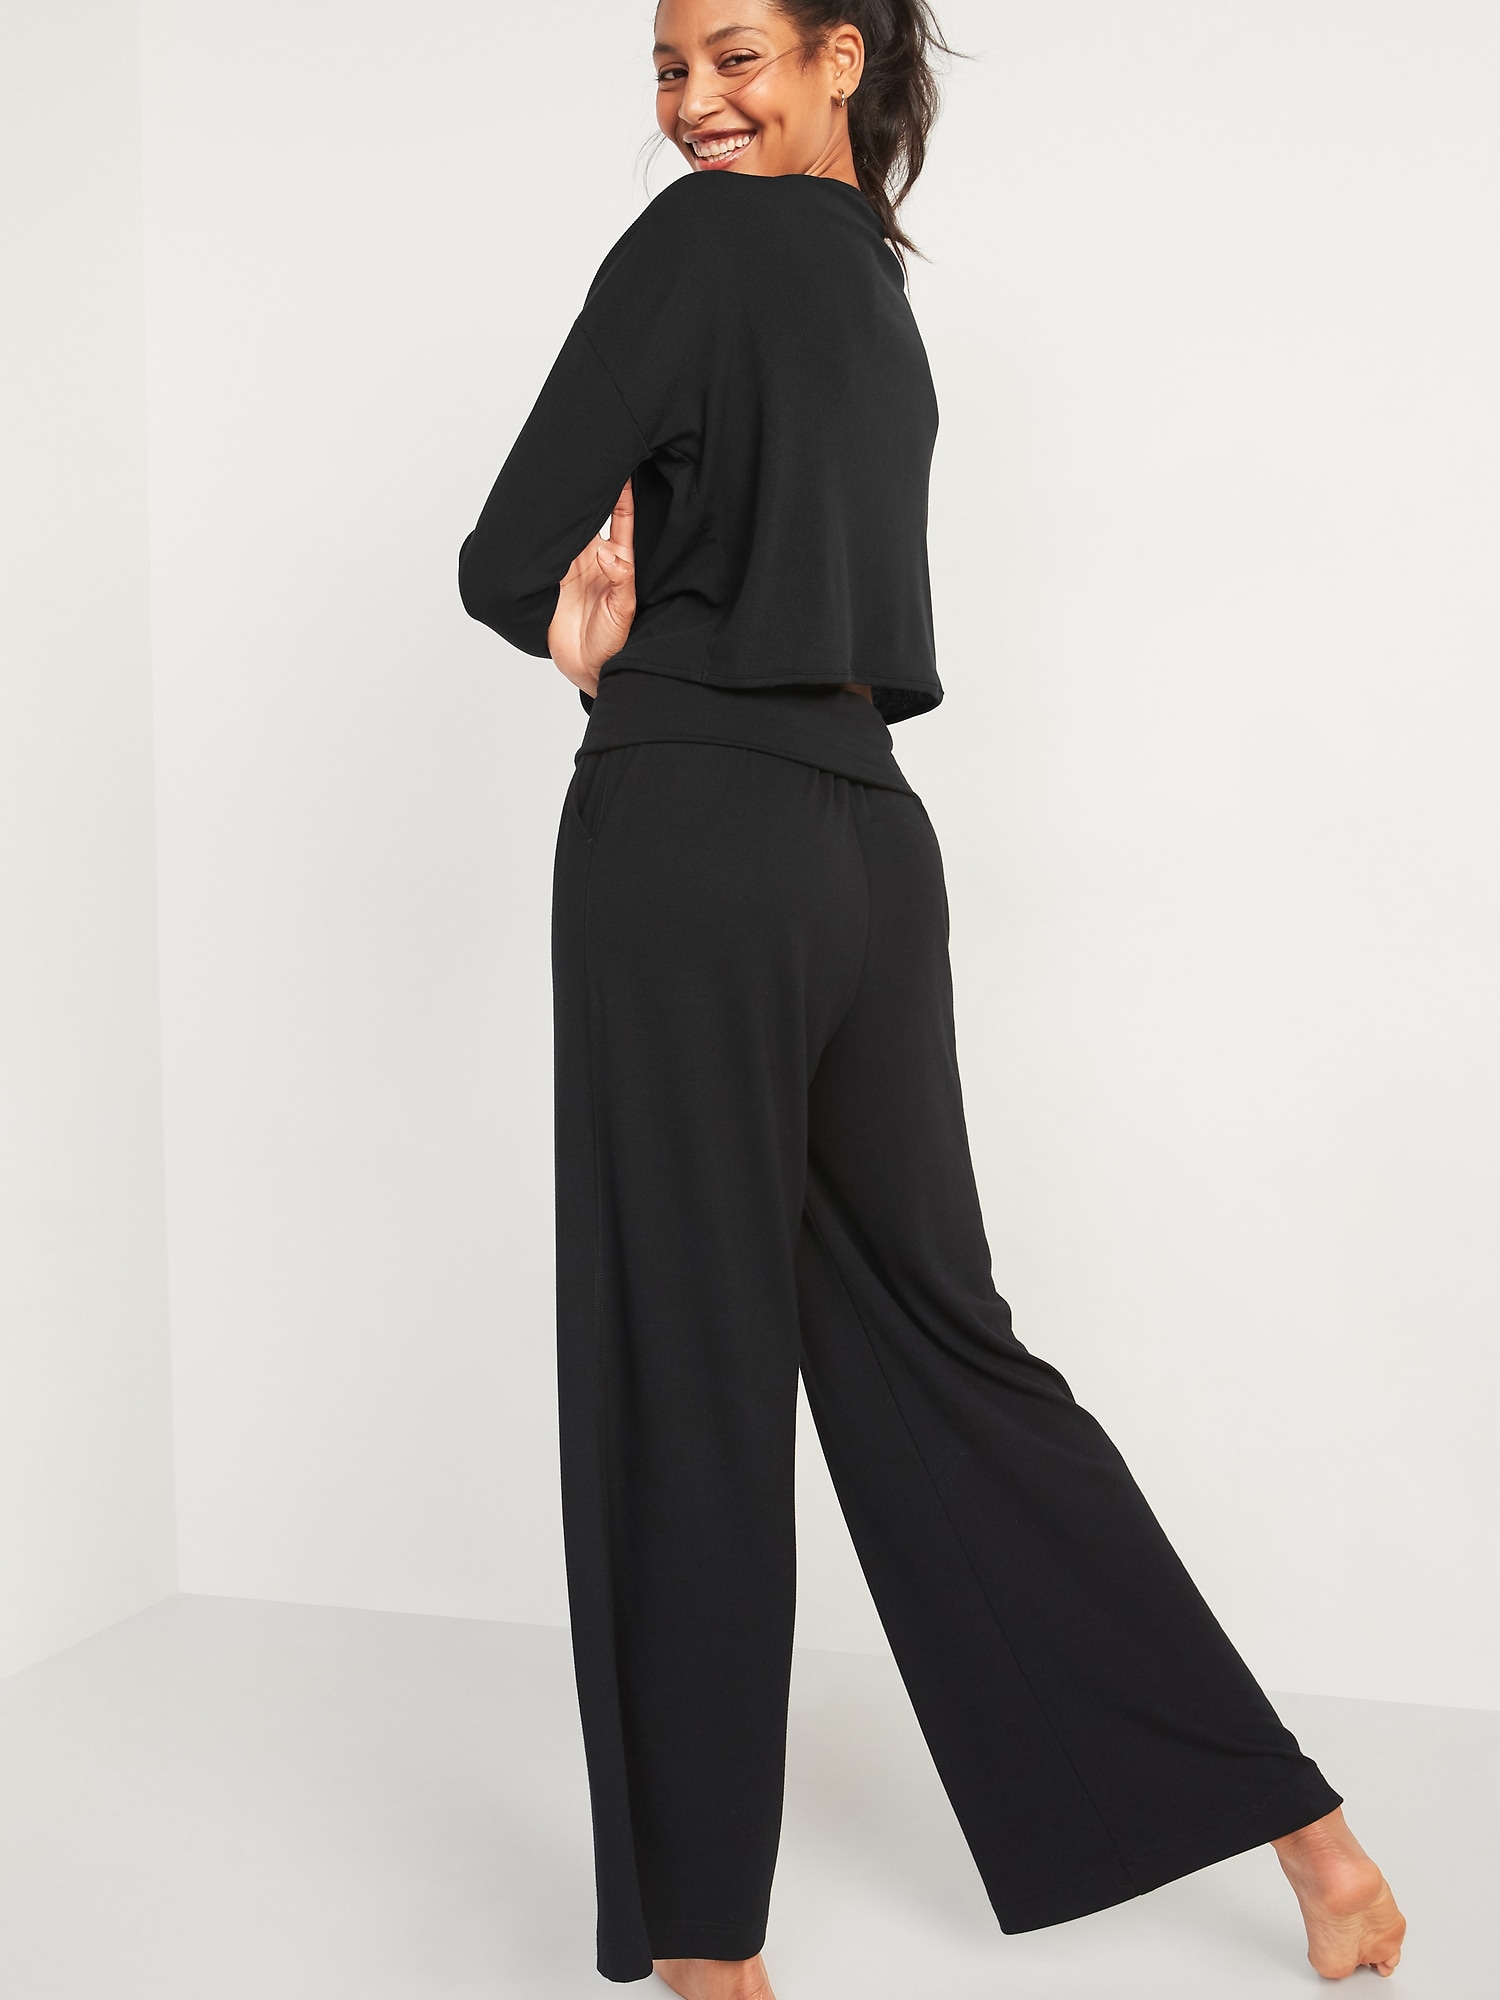 Mid-Rise Fold-Over Waist UltraLite Wide-Leg Yoga Pants for Women